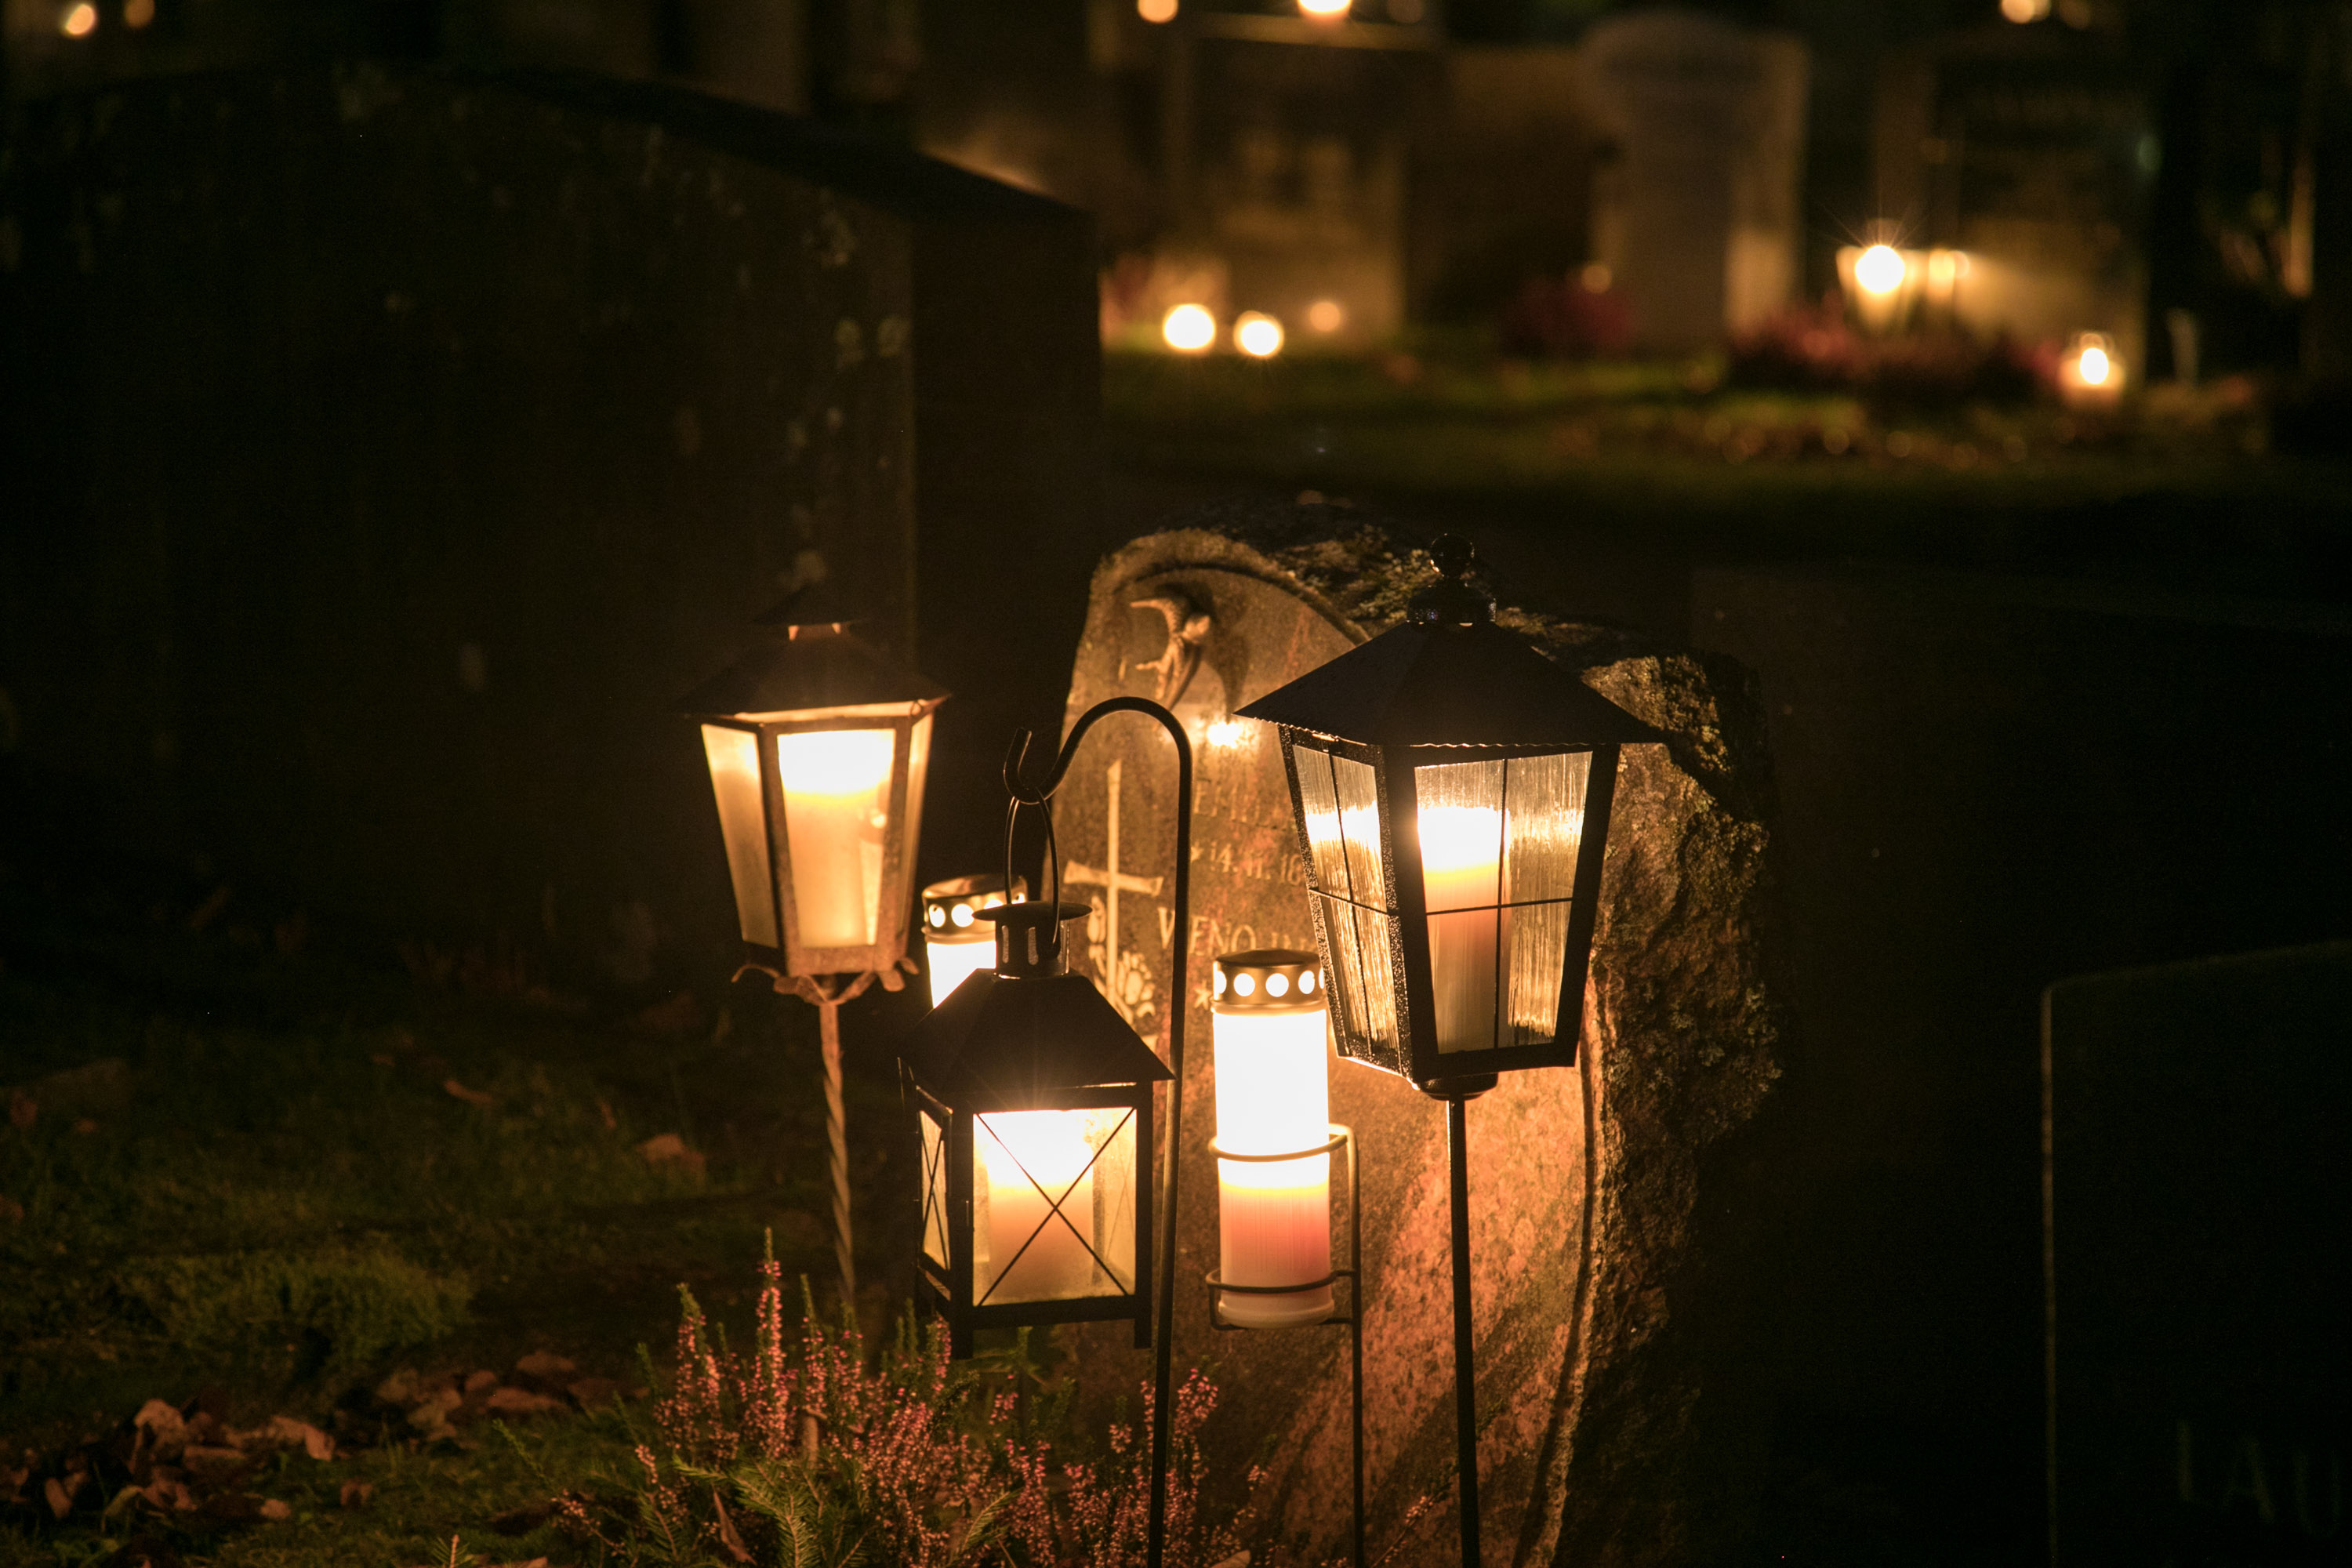 Hautalyhtyjä, joissa palaa kynttilöitä